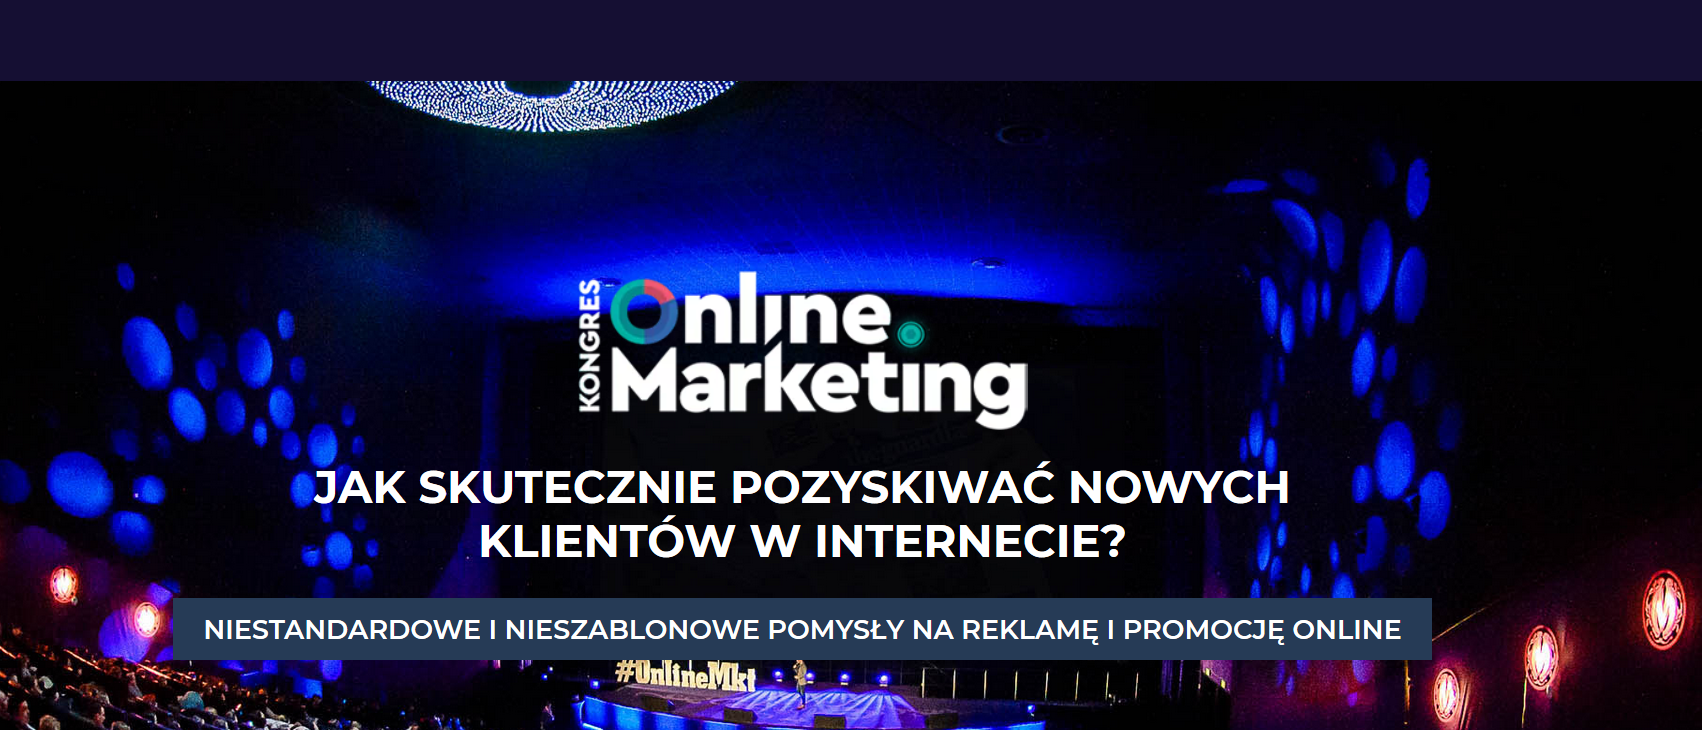 21.04.2020 XIX Kongres Online Marketing 2020 Jak skutecznie pozyskiwać nowych klientów w internecie? Warszawa 